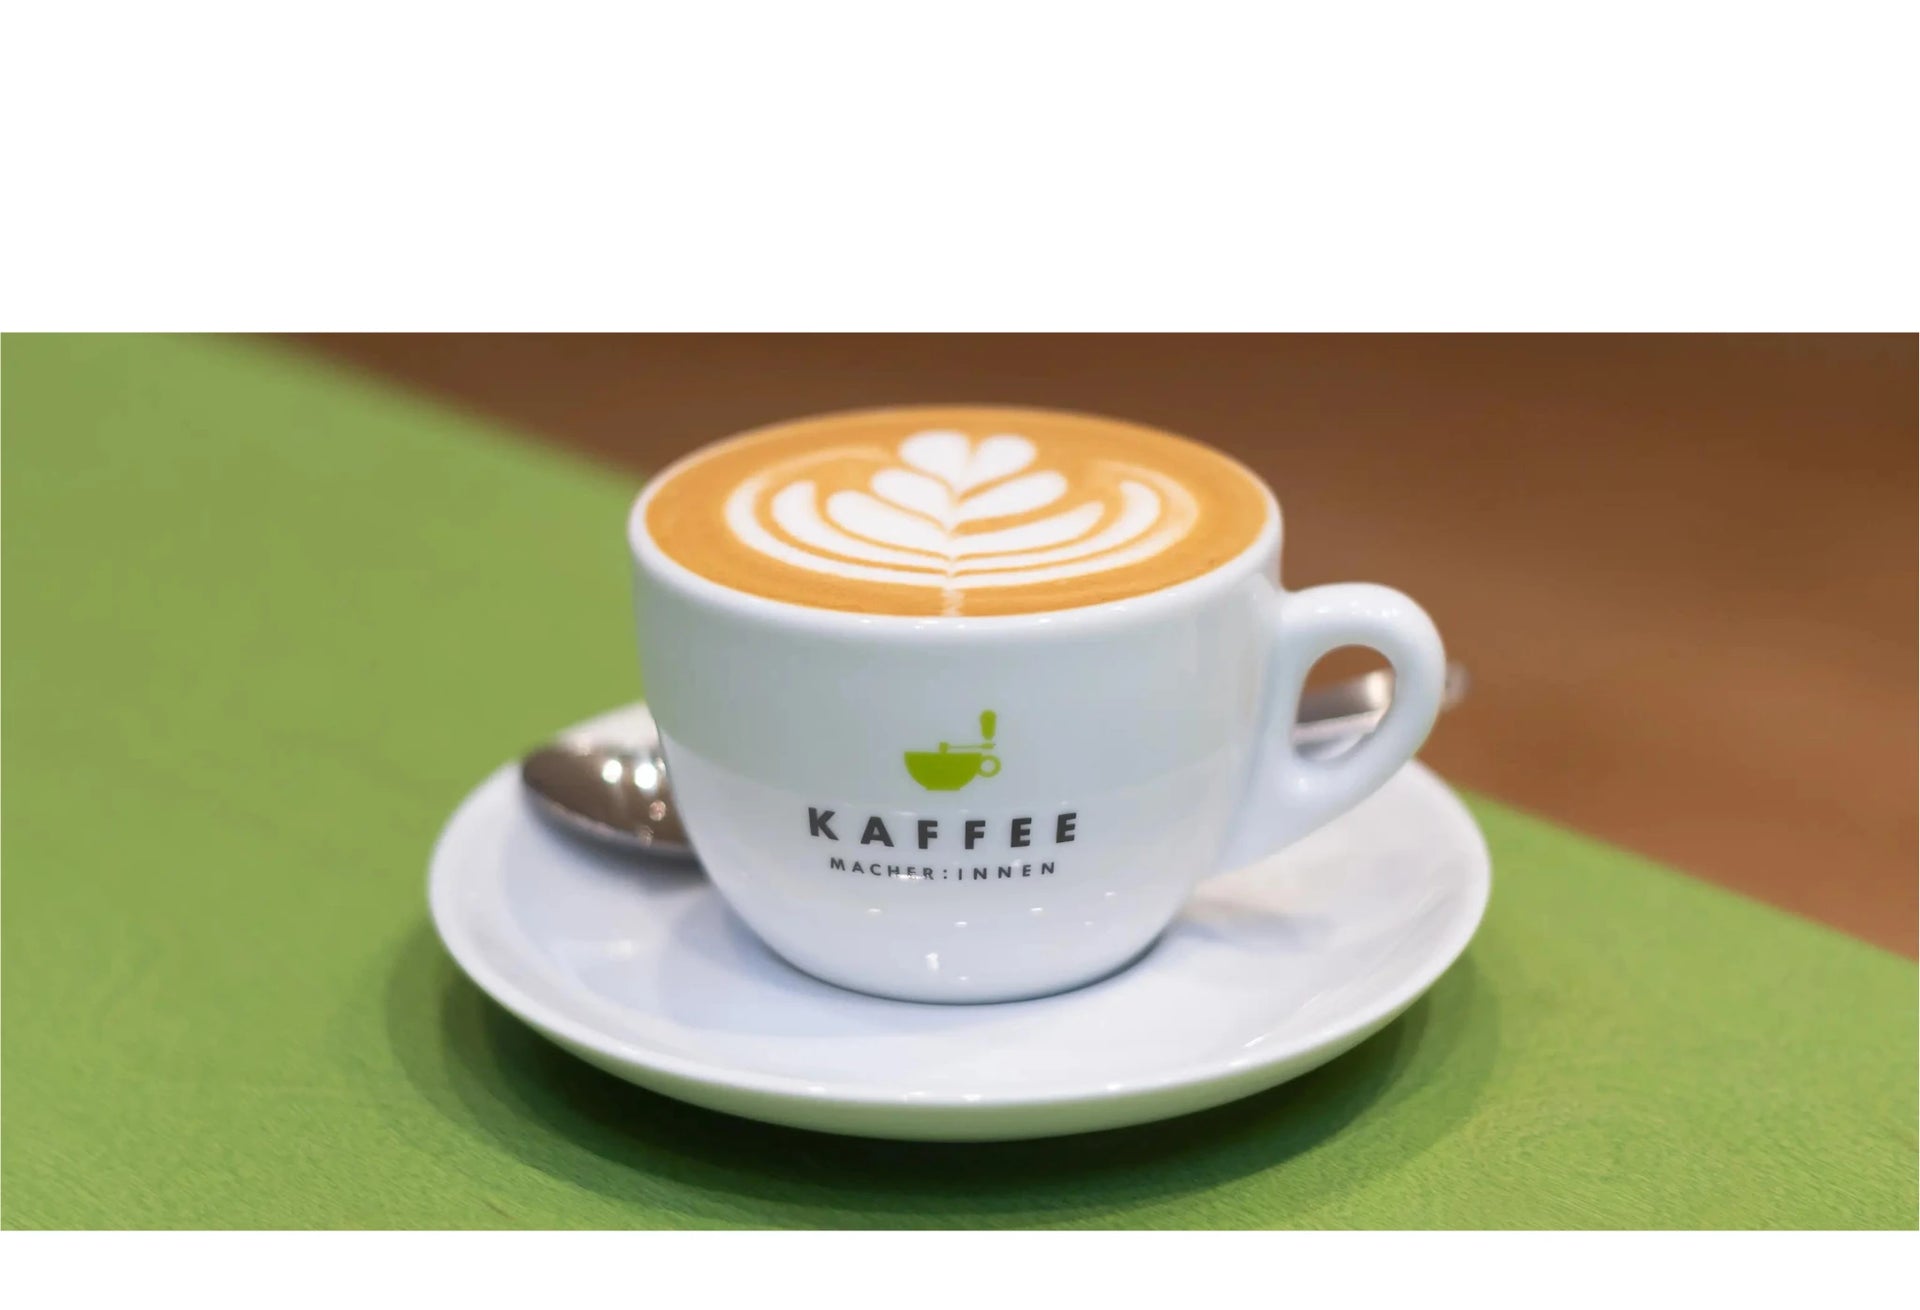 Das Bild zeigt eine gefüllte Kaffeetasse mit Latte Art